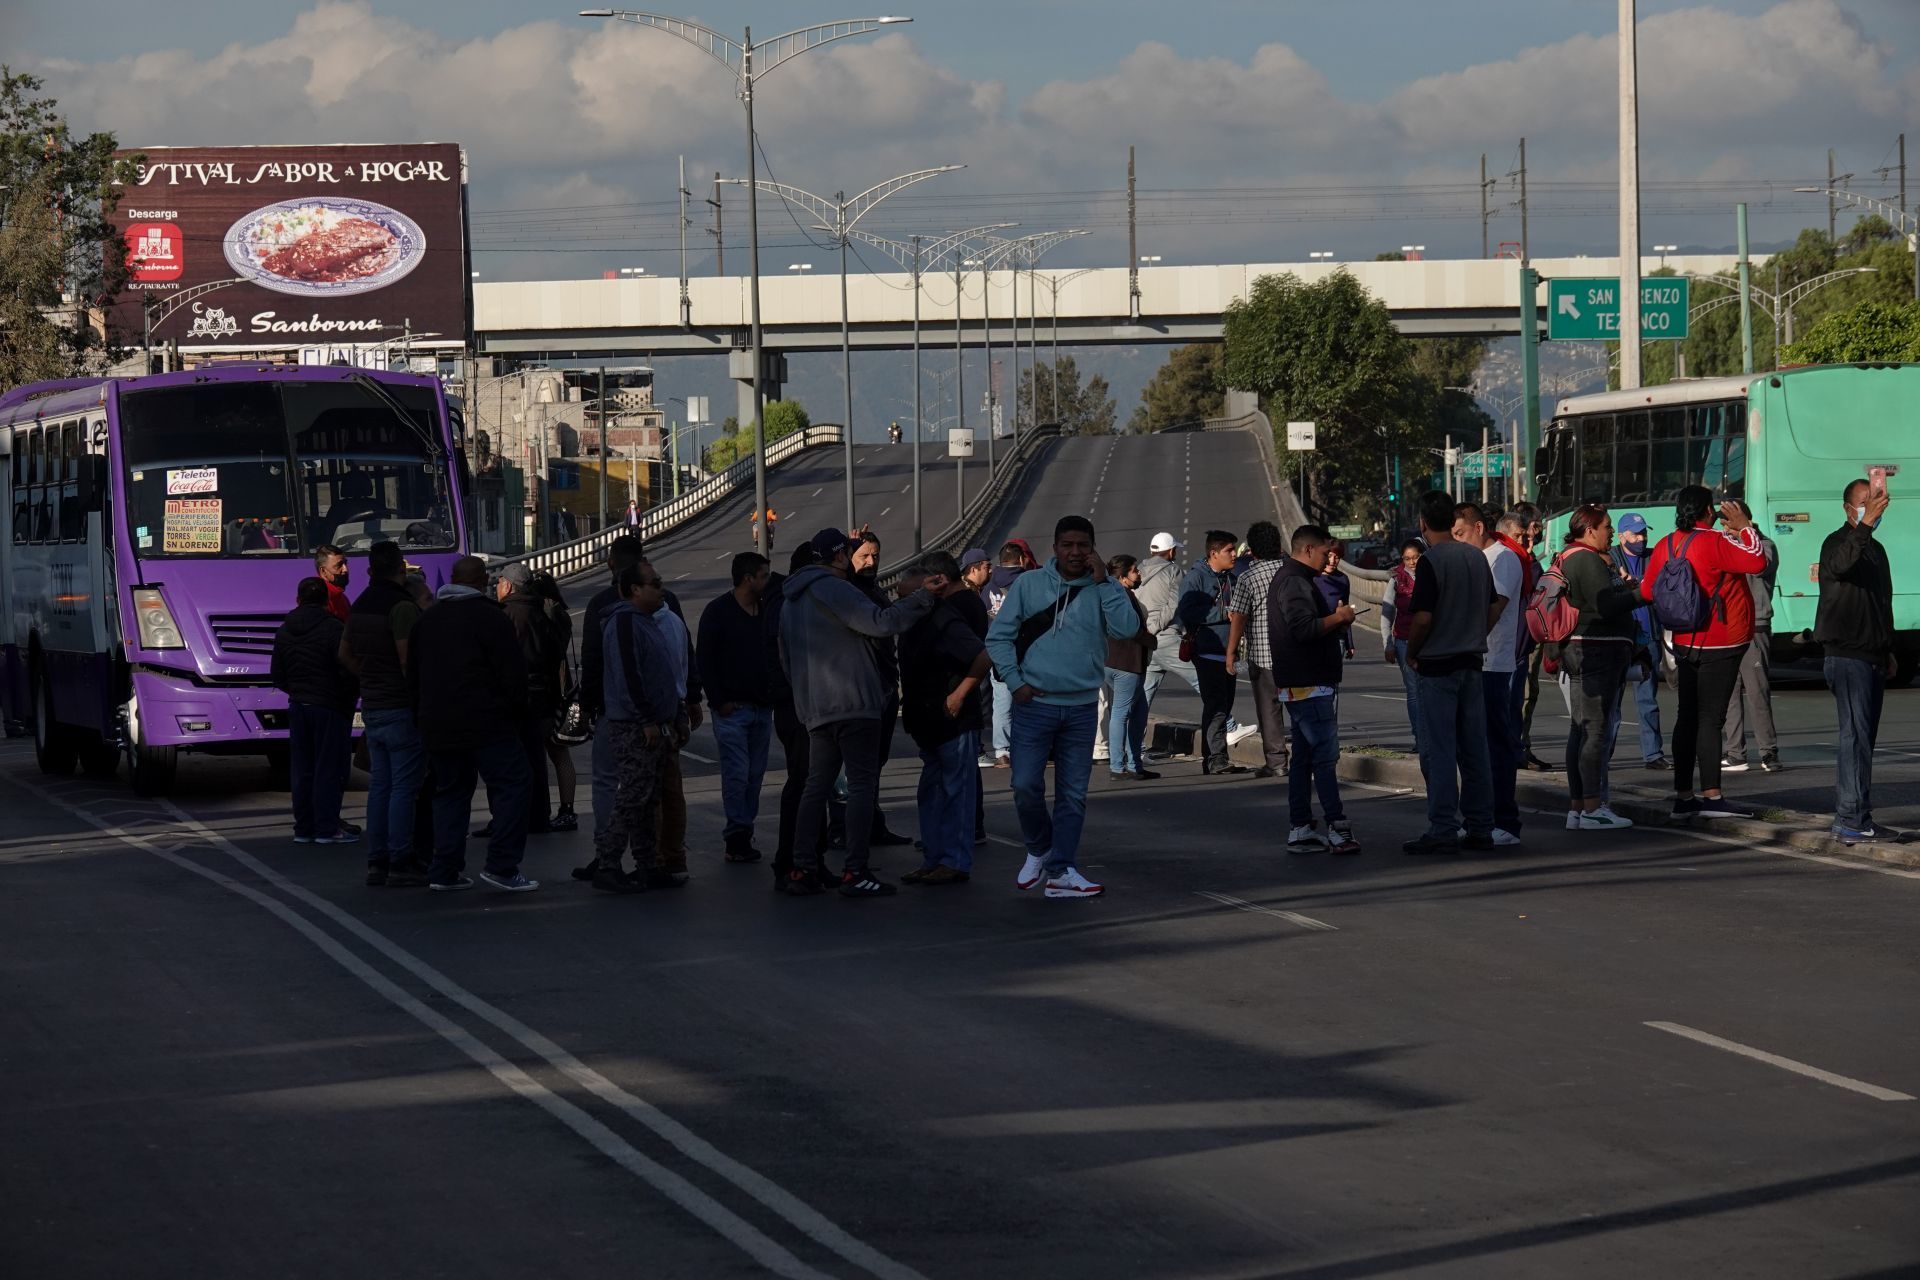 Se encuentra cerrada la circulación de Periférico y Tláhuac por el bloqueo de transportistas que exigen aumento a las tarifas